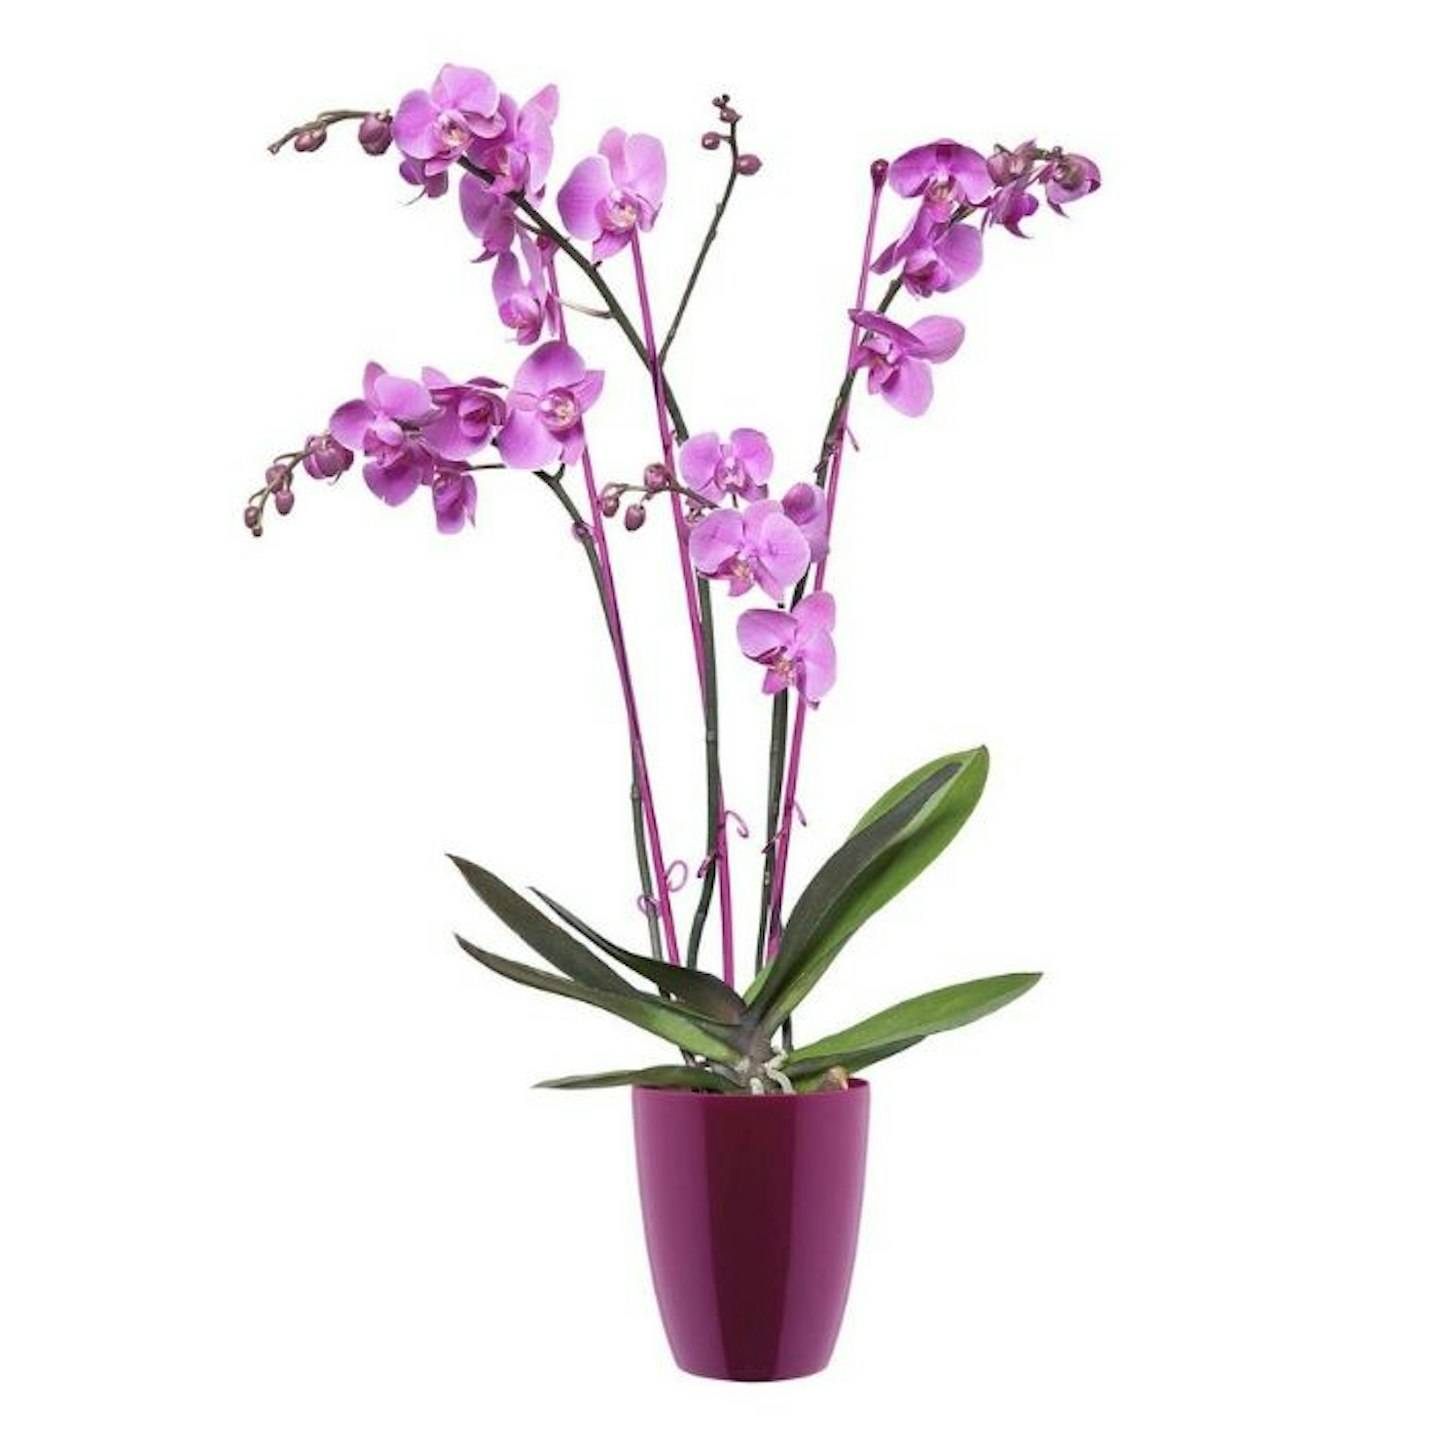 Live orchid plant plus pot